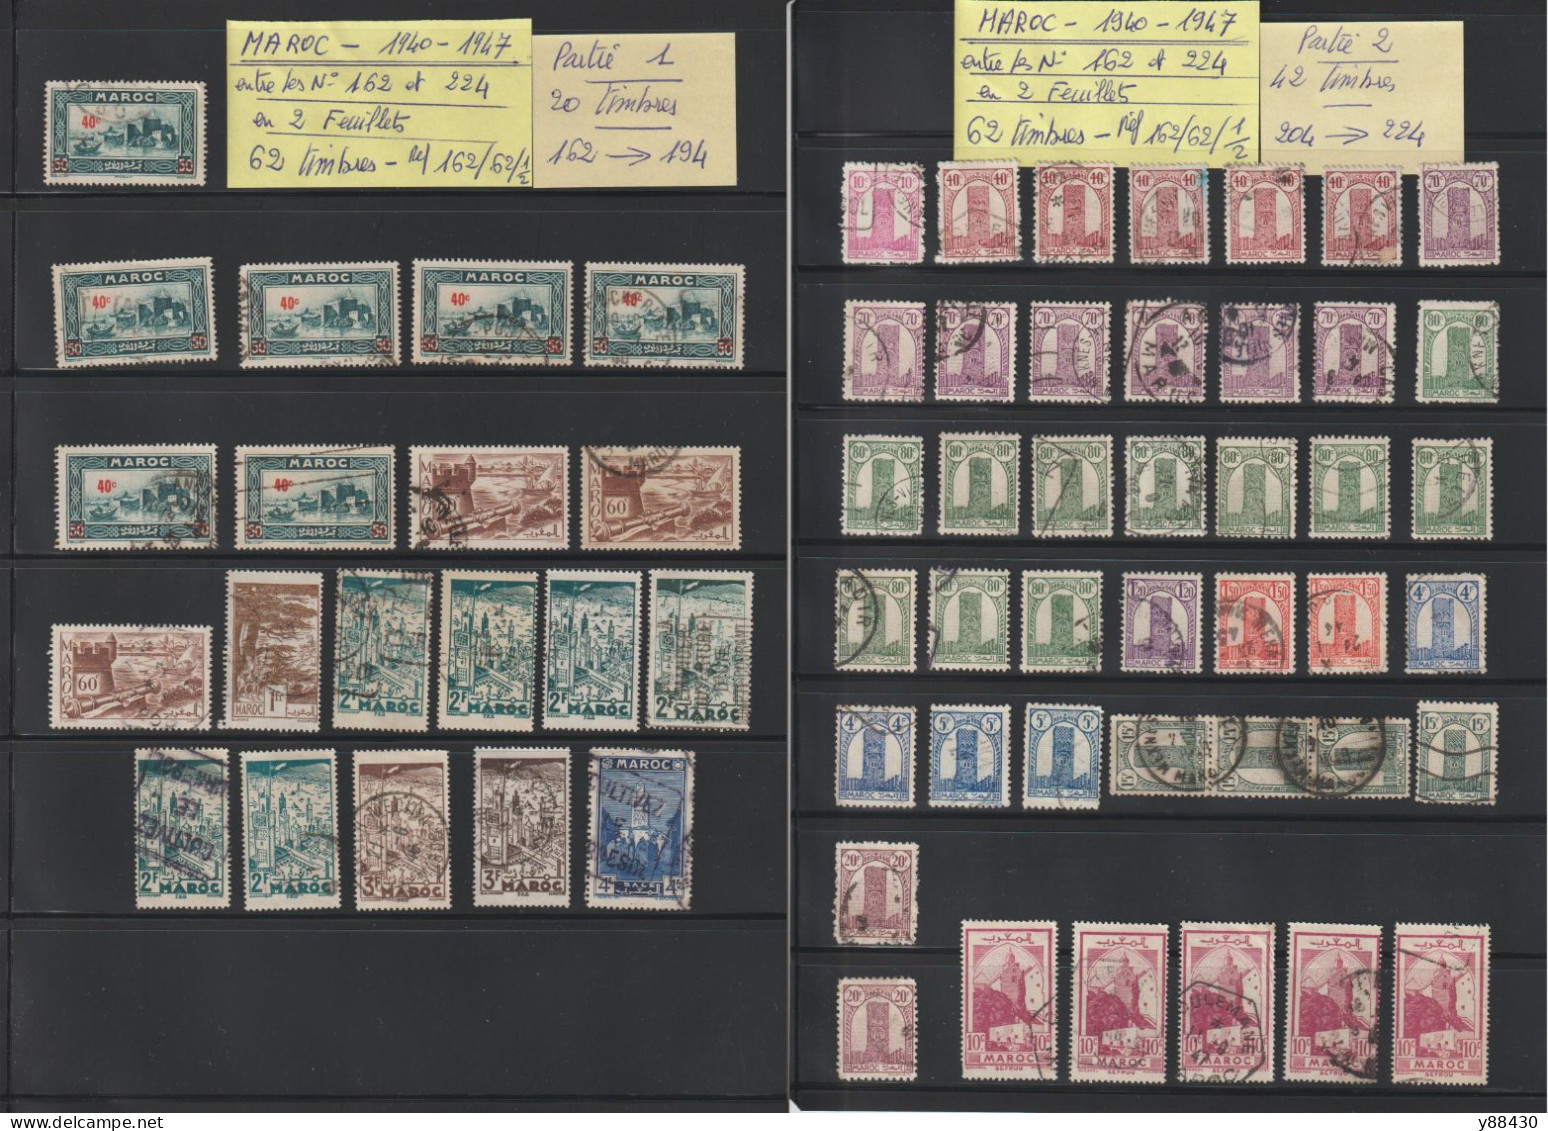 MAROC - Ex. Colonie -  Entre Les N° 162 Et 224  De  1940 à 1947  -  62  Timbres Oblitérés - 6 Scan - Used Stamps